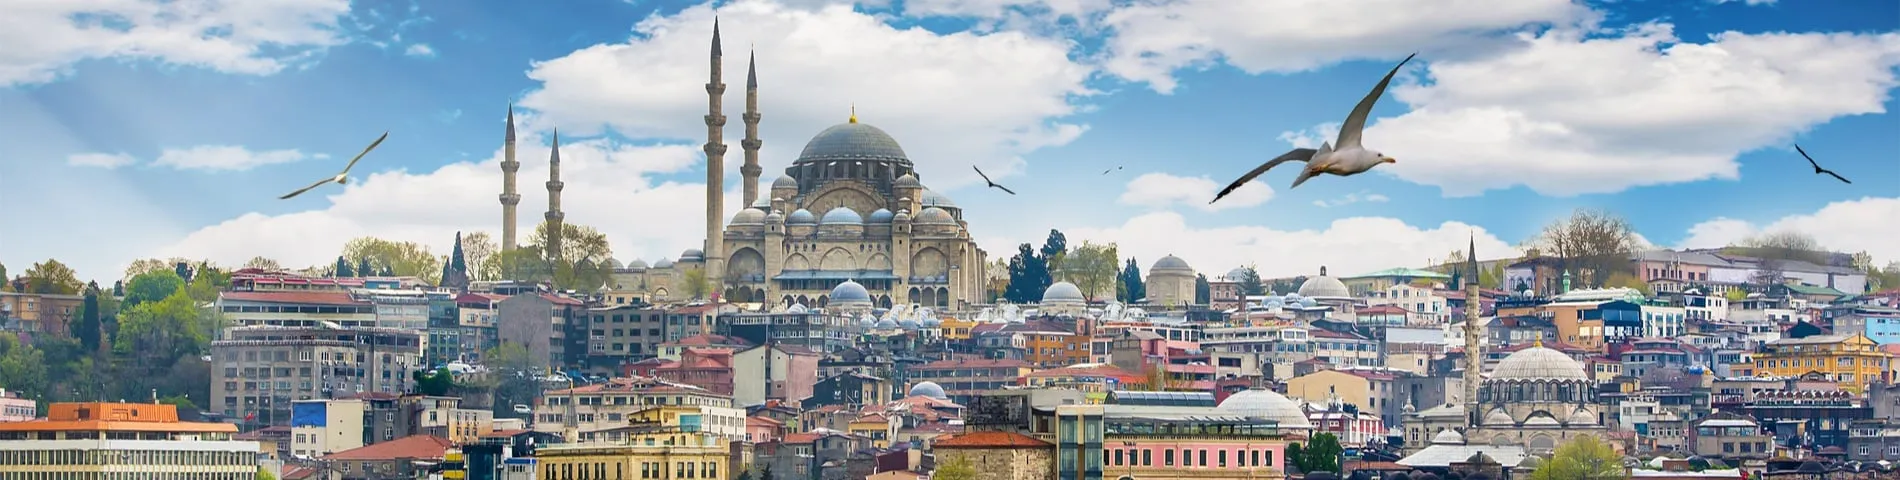 Стамбул - Другие экзамены